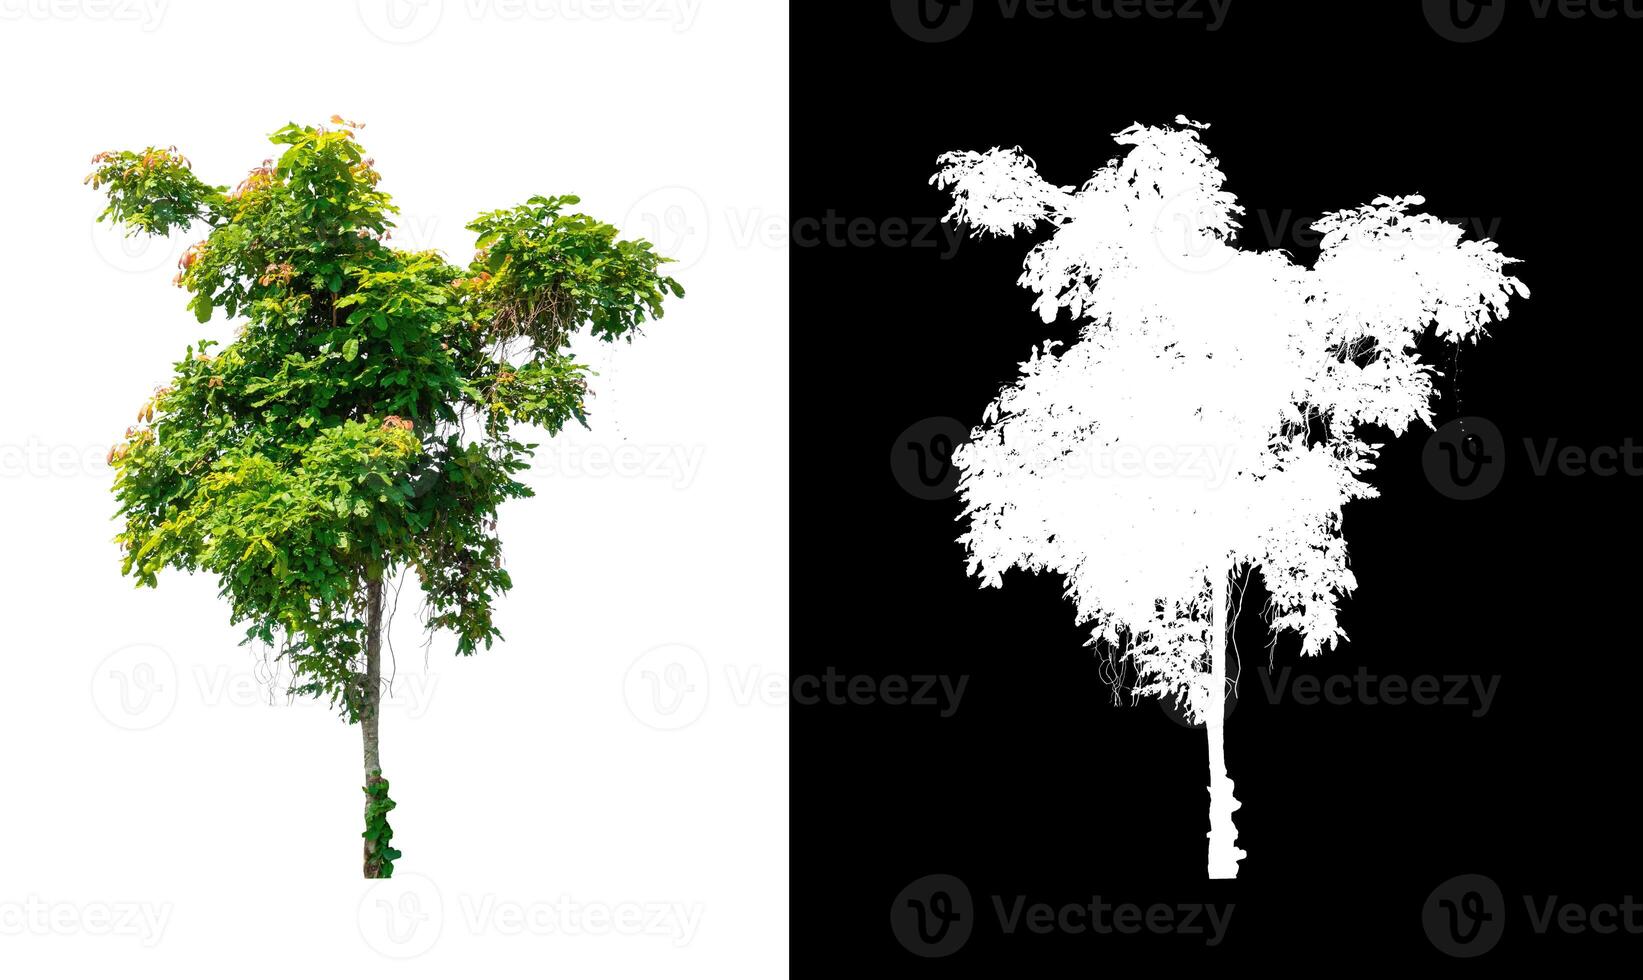 träd den där är isolerat på vit bakgrund är lämplig för både utskrift och webb sidor foto